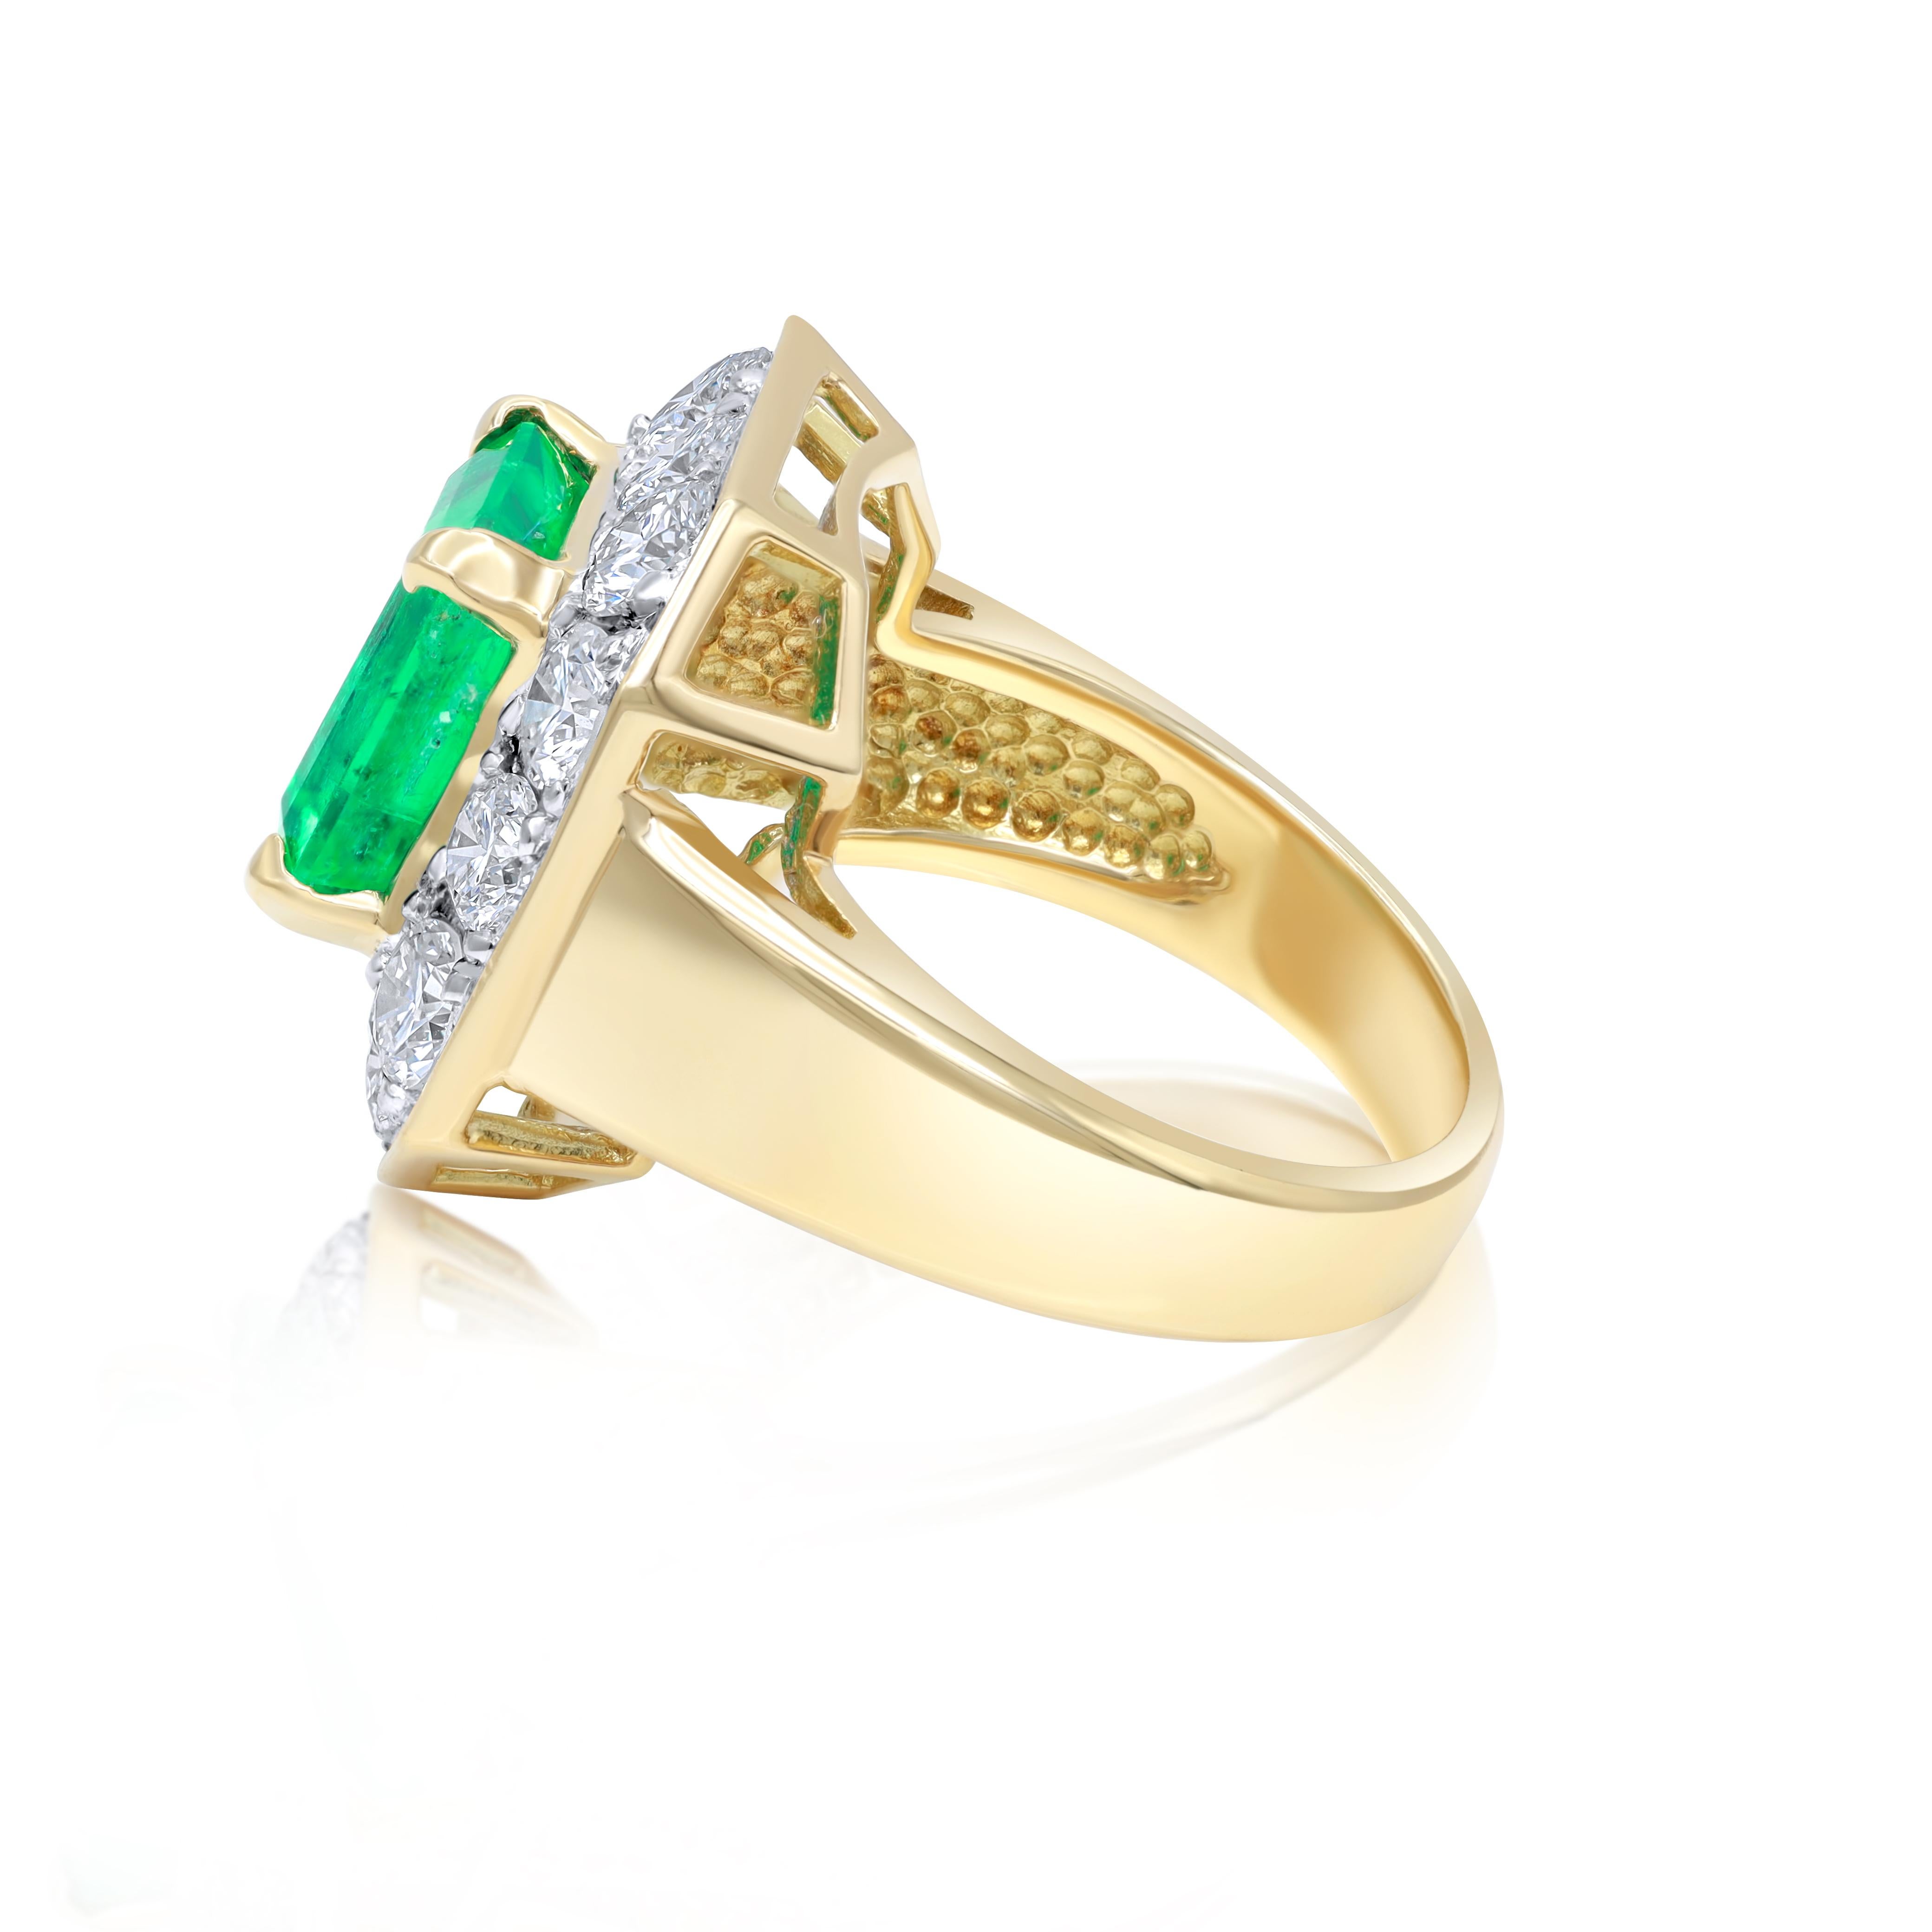 18 kt Gelbgold Smaragd und Diamant-Ring mit einem Zentrum 3,70 ct Smaragd umgeben von 2,40 cts tw von runden Diamanten.
Diana M. ist seit über 35 Jahren ein führender Anbieter von hochwertigem Schmuck.
Diana M ist eine zentrale Anlaufstelle für alle